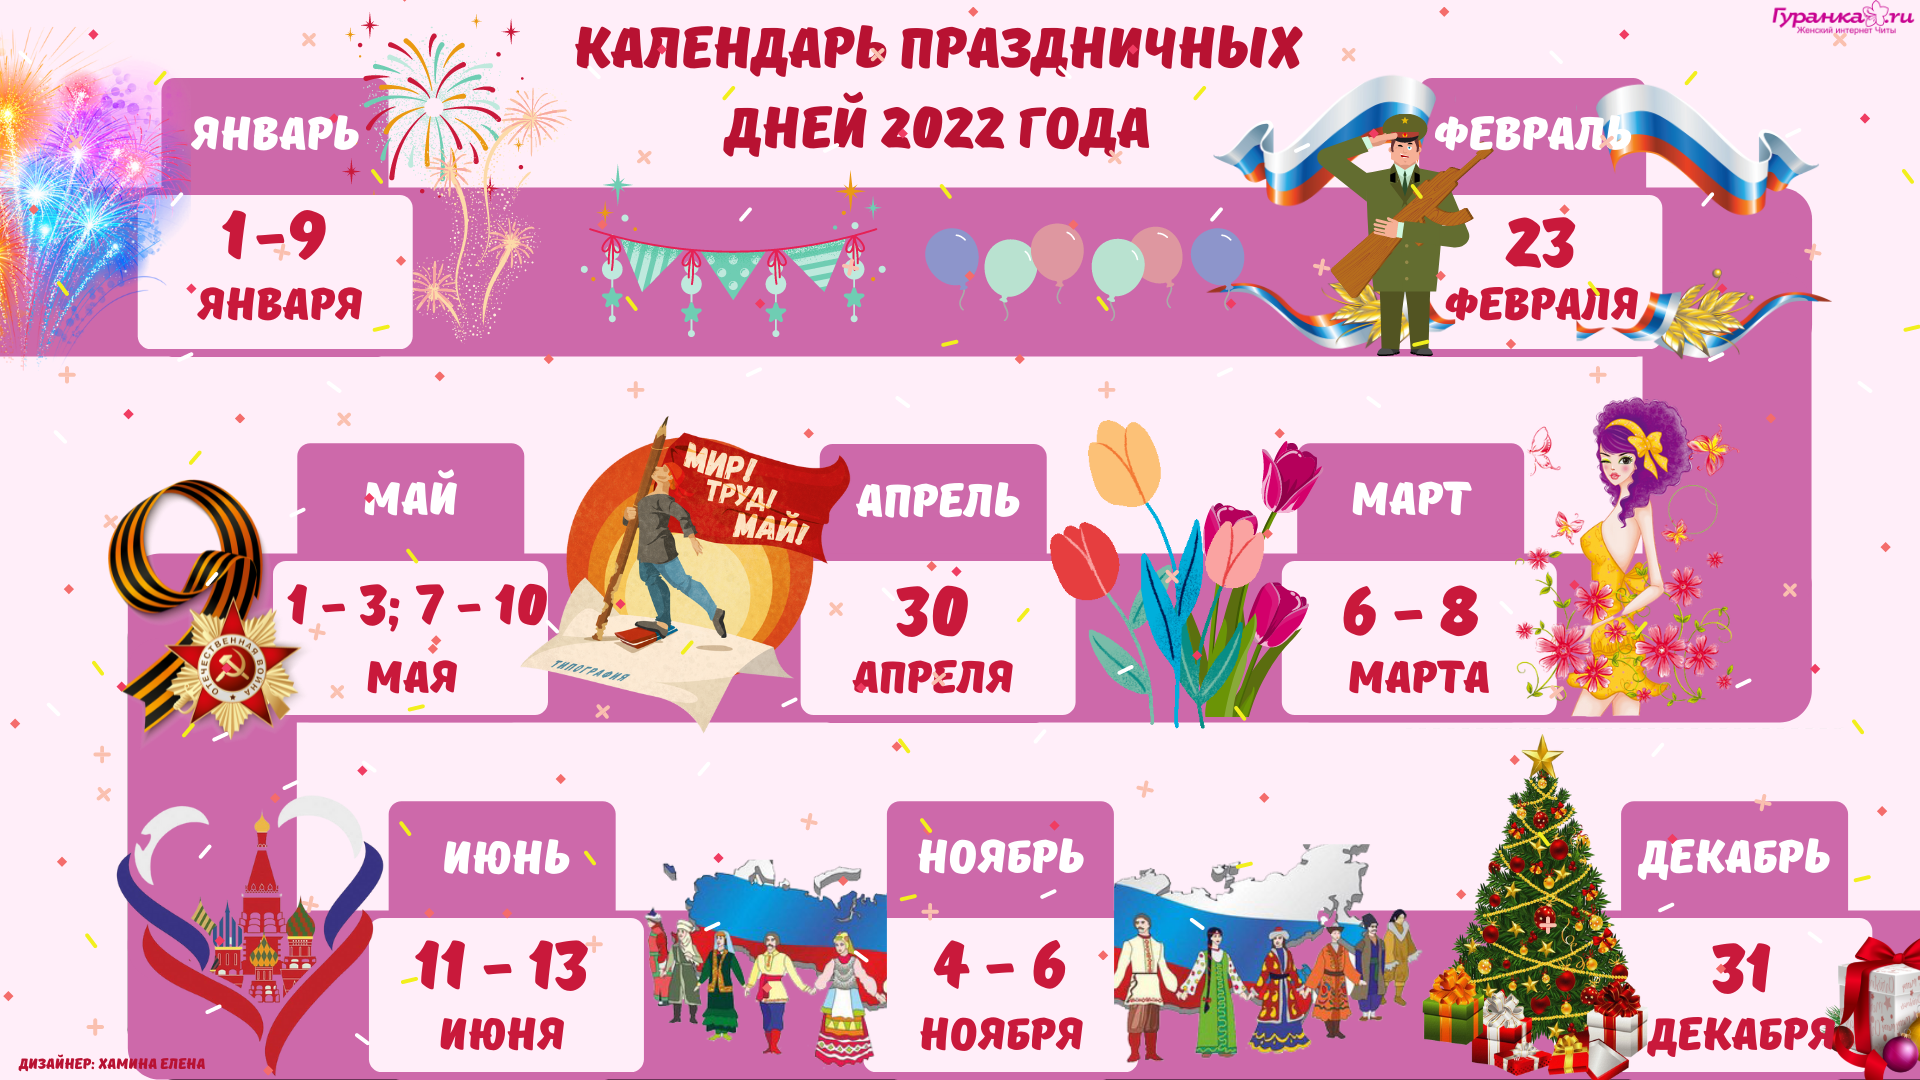 12 выходной 2023. Праздники России выходные дни 2023. Праздники в январе 2023. Выходные и праздничные дни в 2023. Выходные и праздничные дни в 2023 году.